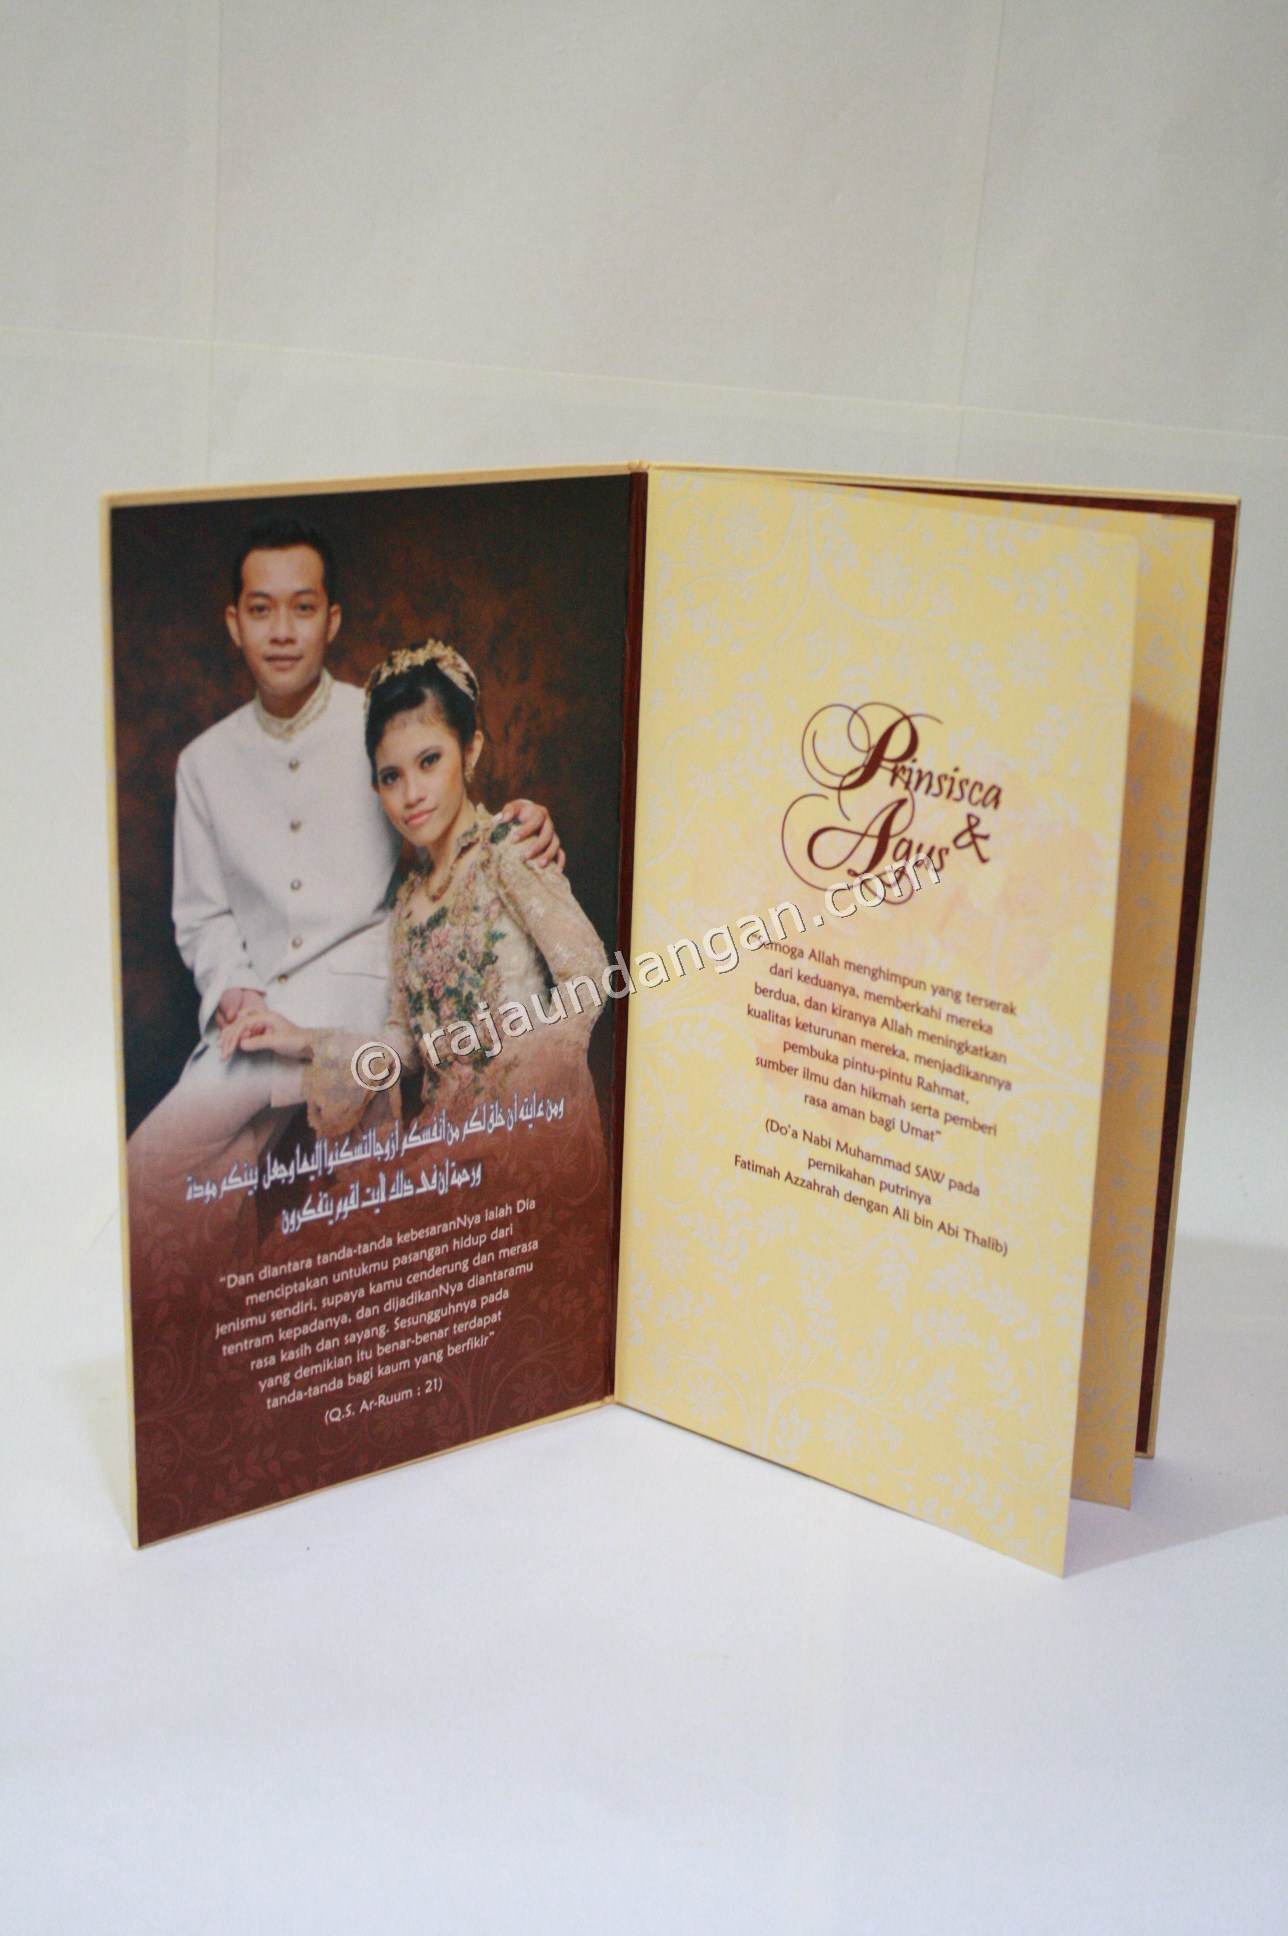 Contoh Kartu Undangan Pernikahan Hardcover Prinsisca dan Agus 4 - Membuat Undangan Pernikahan Simple di Morokrembangan